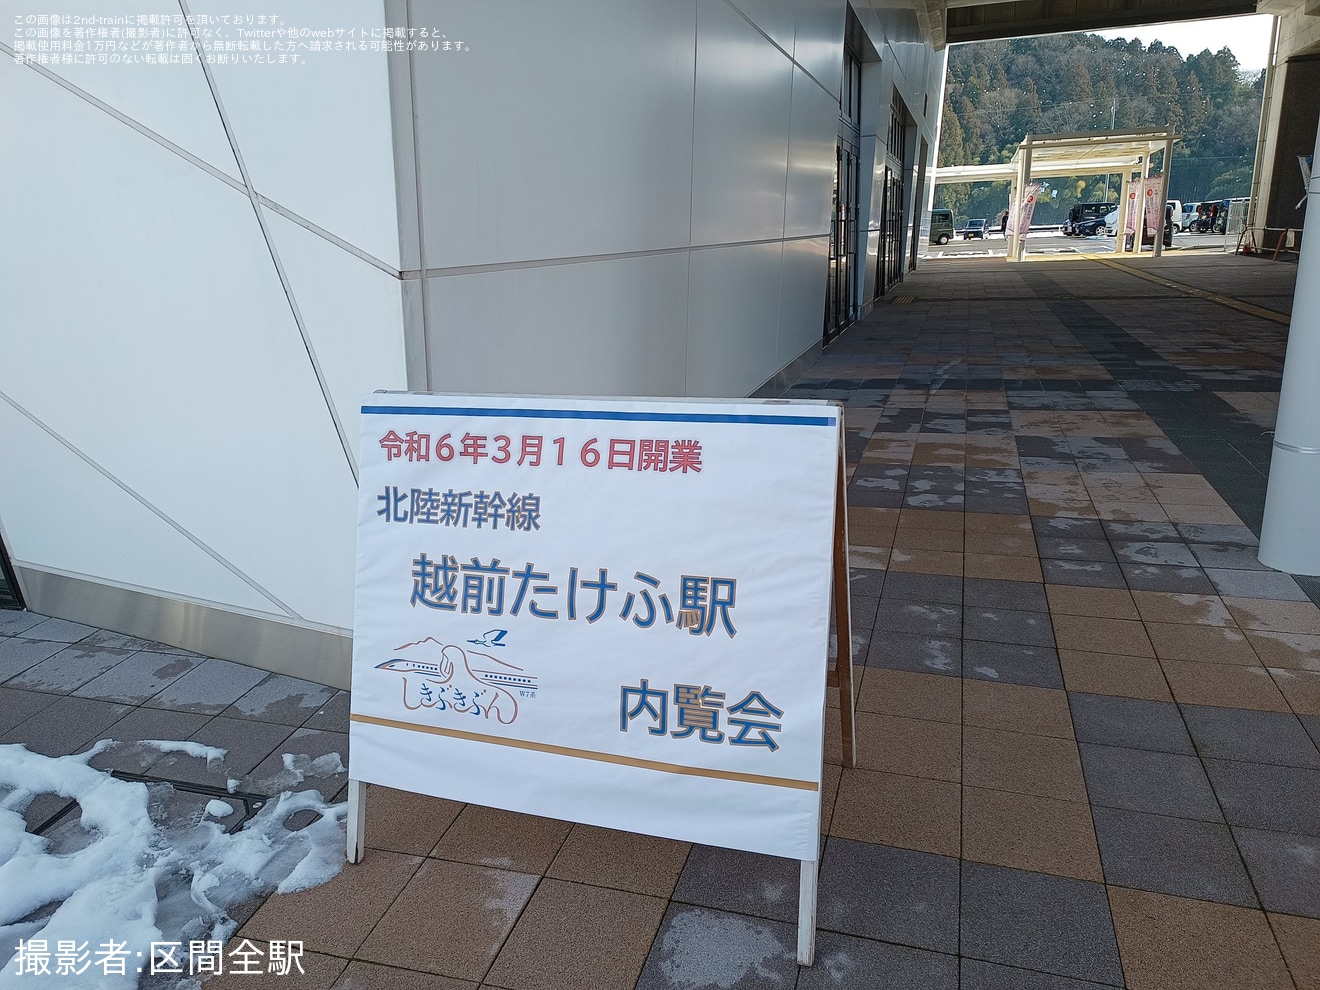 【JR西】「北陸新幹線越前たけふ駅内覧会」開催の拡大写真